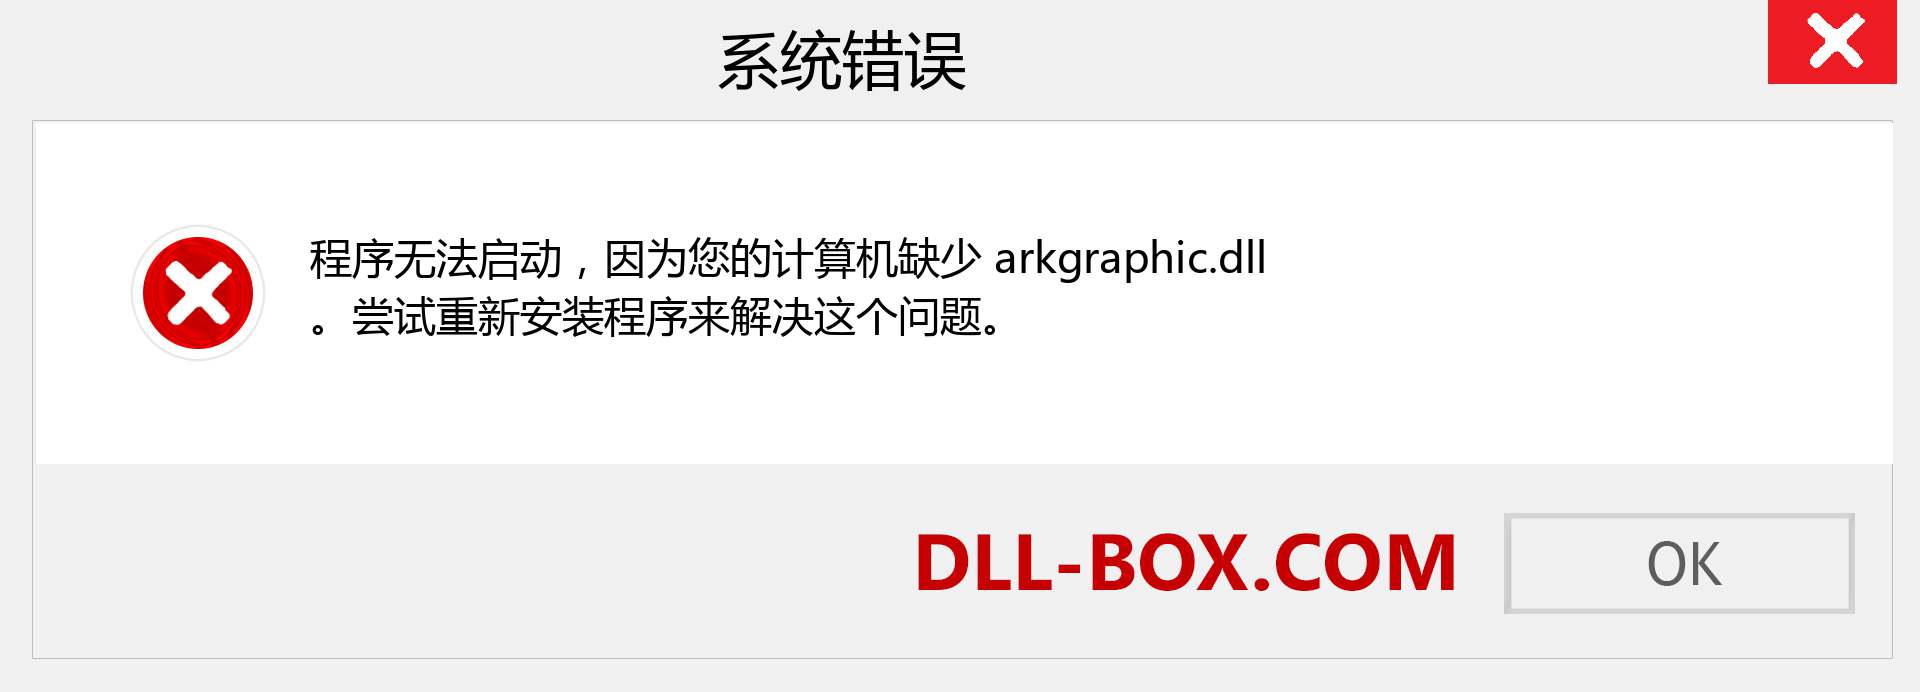 arkgraphic.dll 文件丢失？。 适用于 Windows 7、8、10 的下载 - 修复 Windows、照片、图像上的 arkgraphic dll 丢失错误